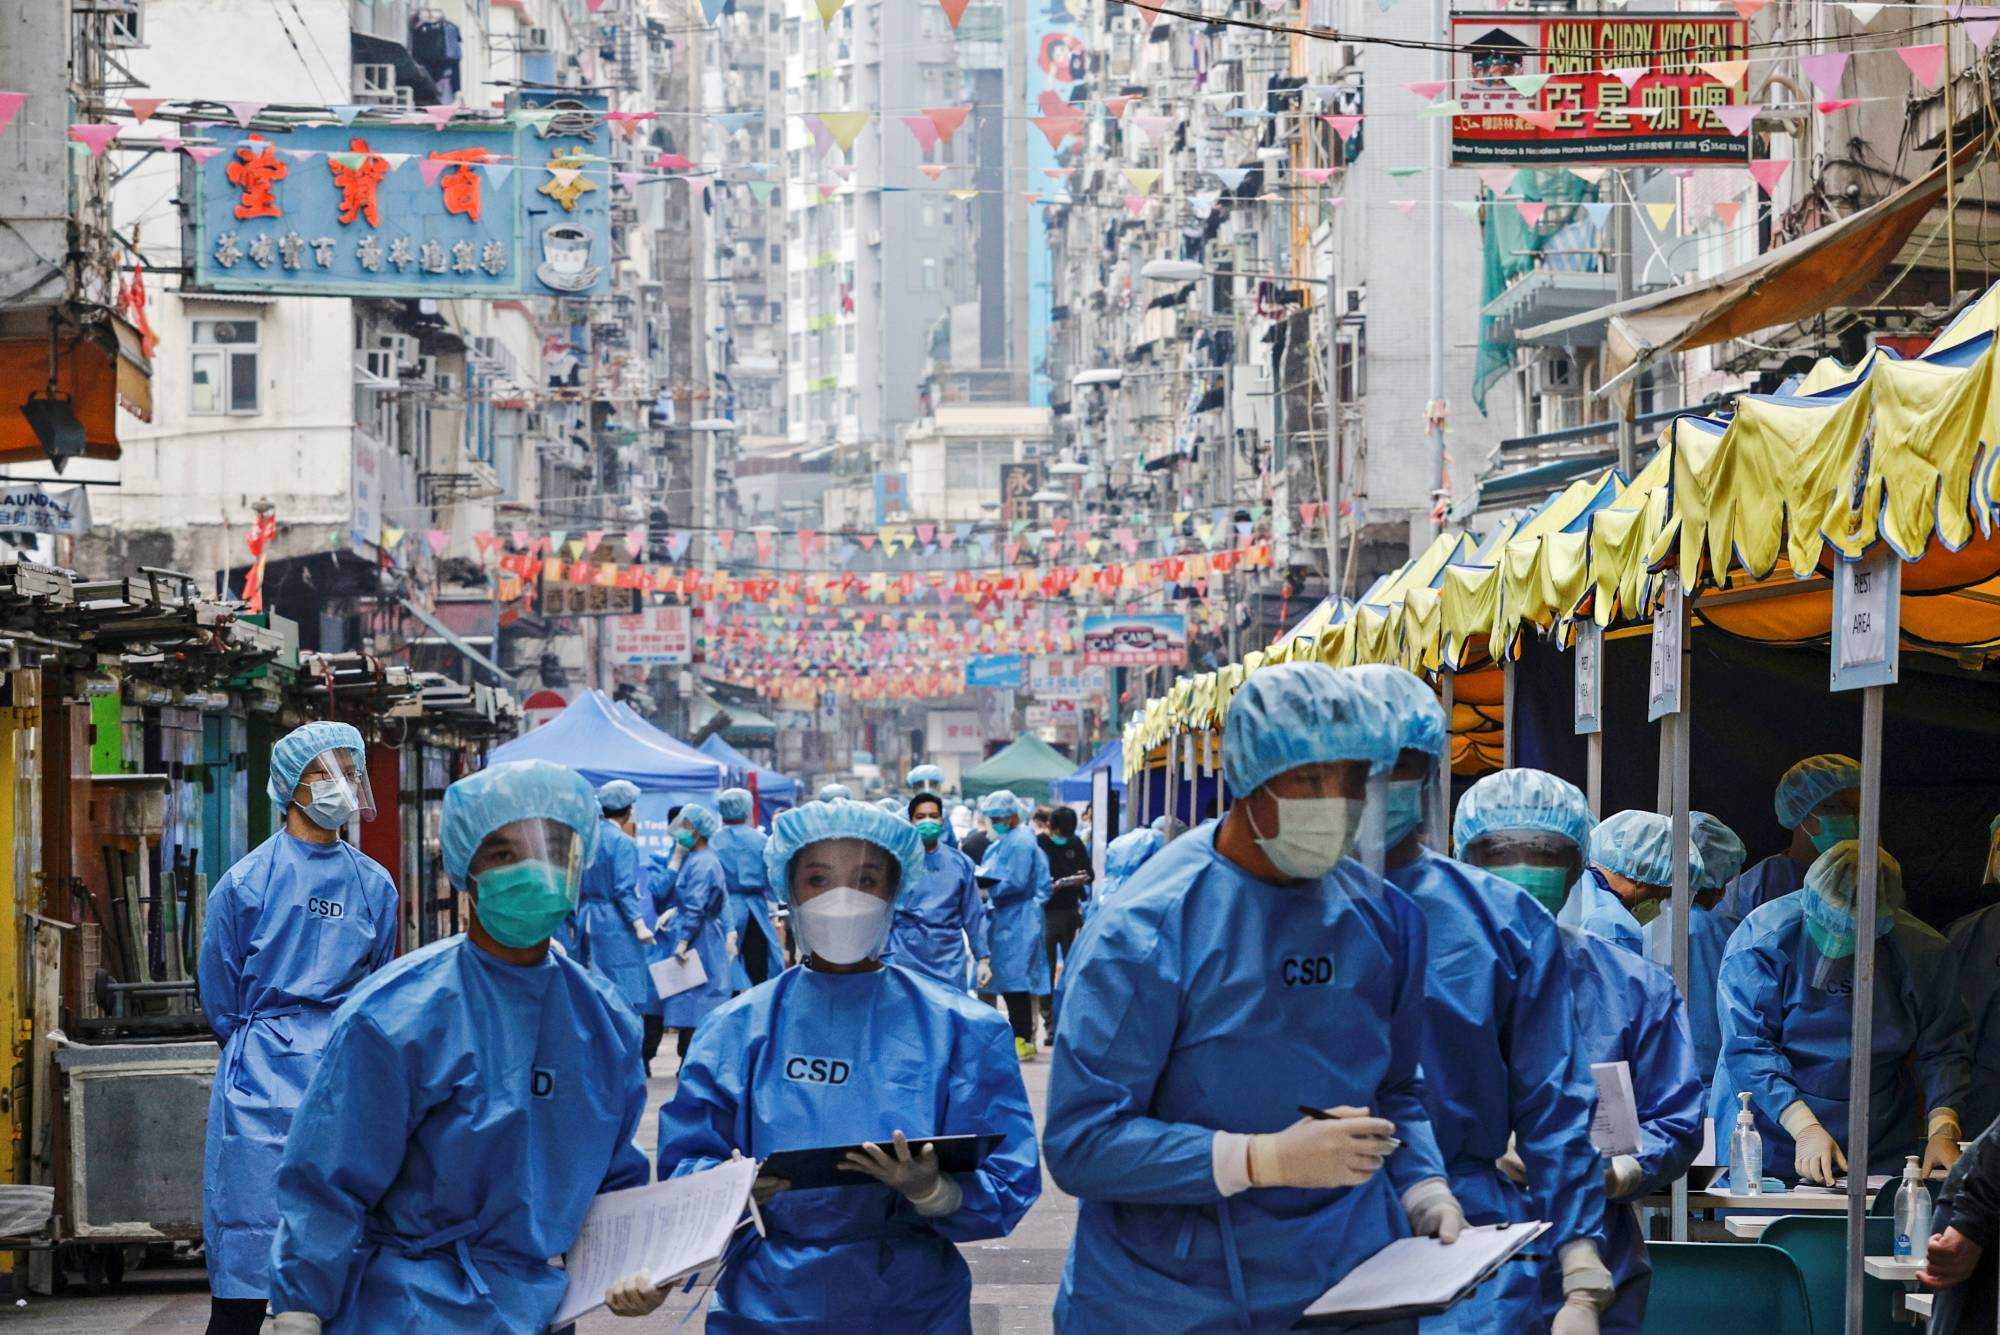 Gelombang Infeksi Covid-19 di Hong Kong Meningkat Drastis dan Membuat Kewalahan Pihak Berwenang, Kapasitas RS Sudah 100 Persen dan Peningkatan Kasus 20 Kali Lipat